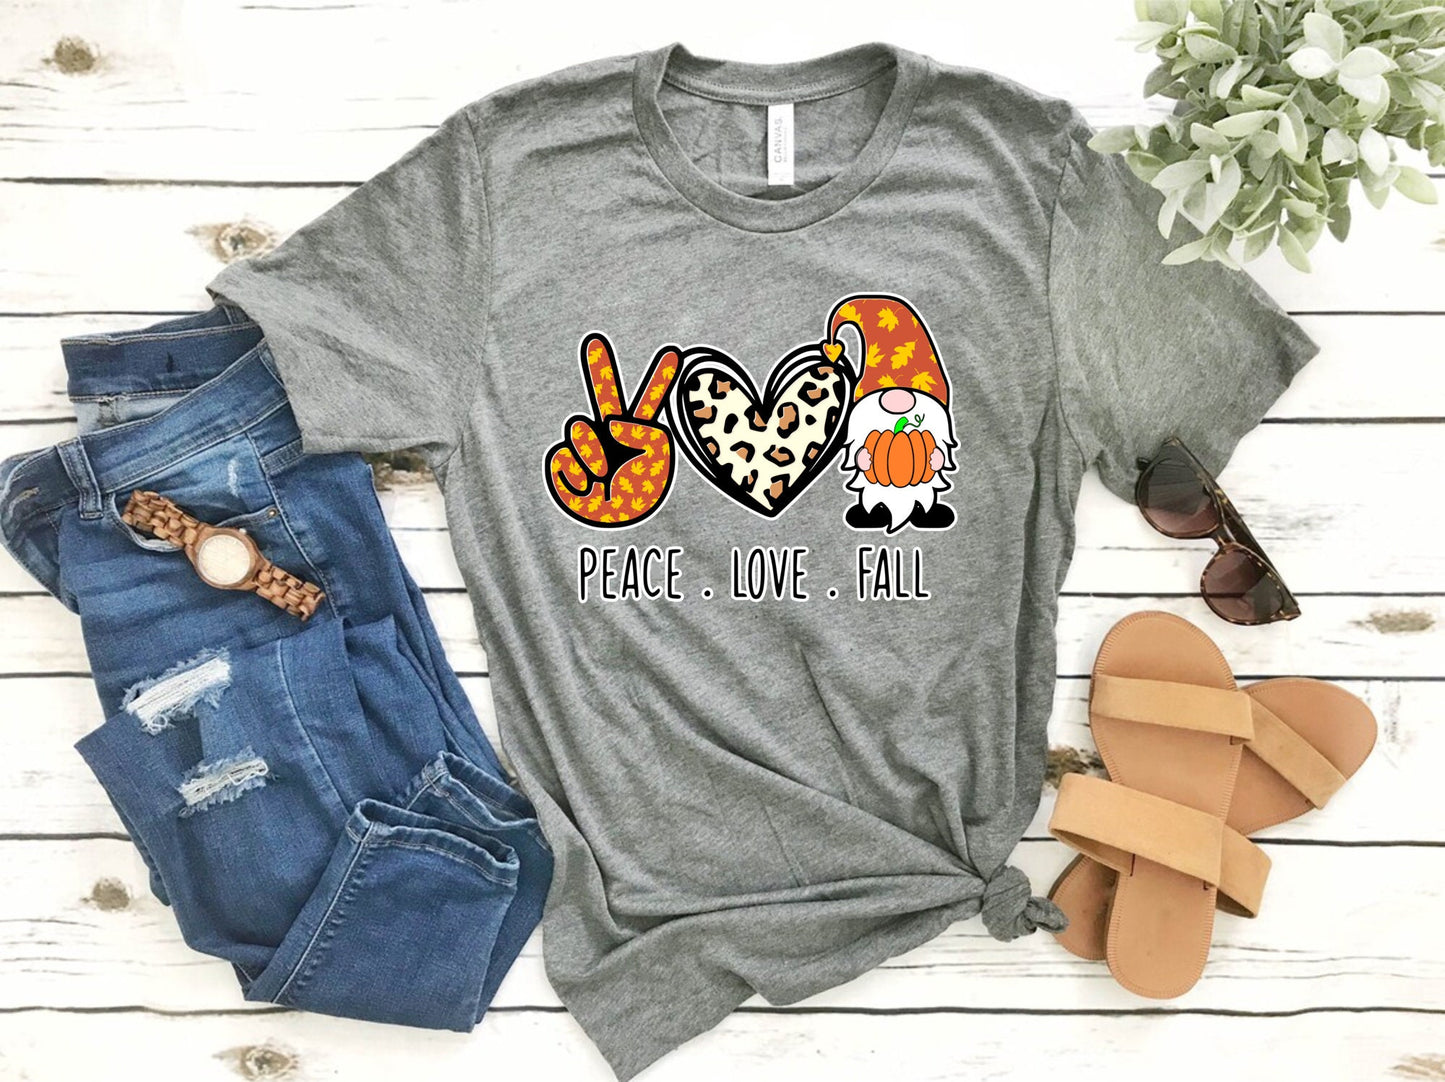 Peace Love Fall Gnome Shirt, Fall Gnome Shirt, Fall Shirts, Cute Fall Shirt, Gnome Shirt, Autumn Shirt, Pumpkin Shirt, Women's Shirts